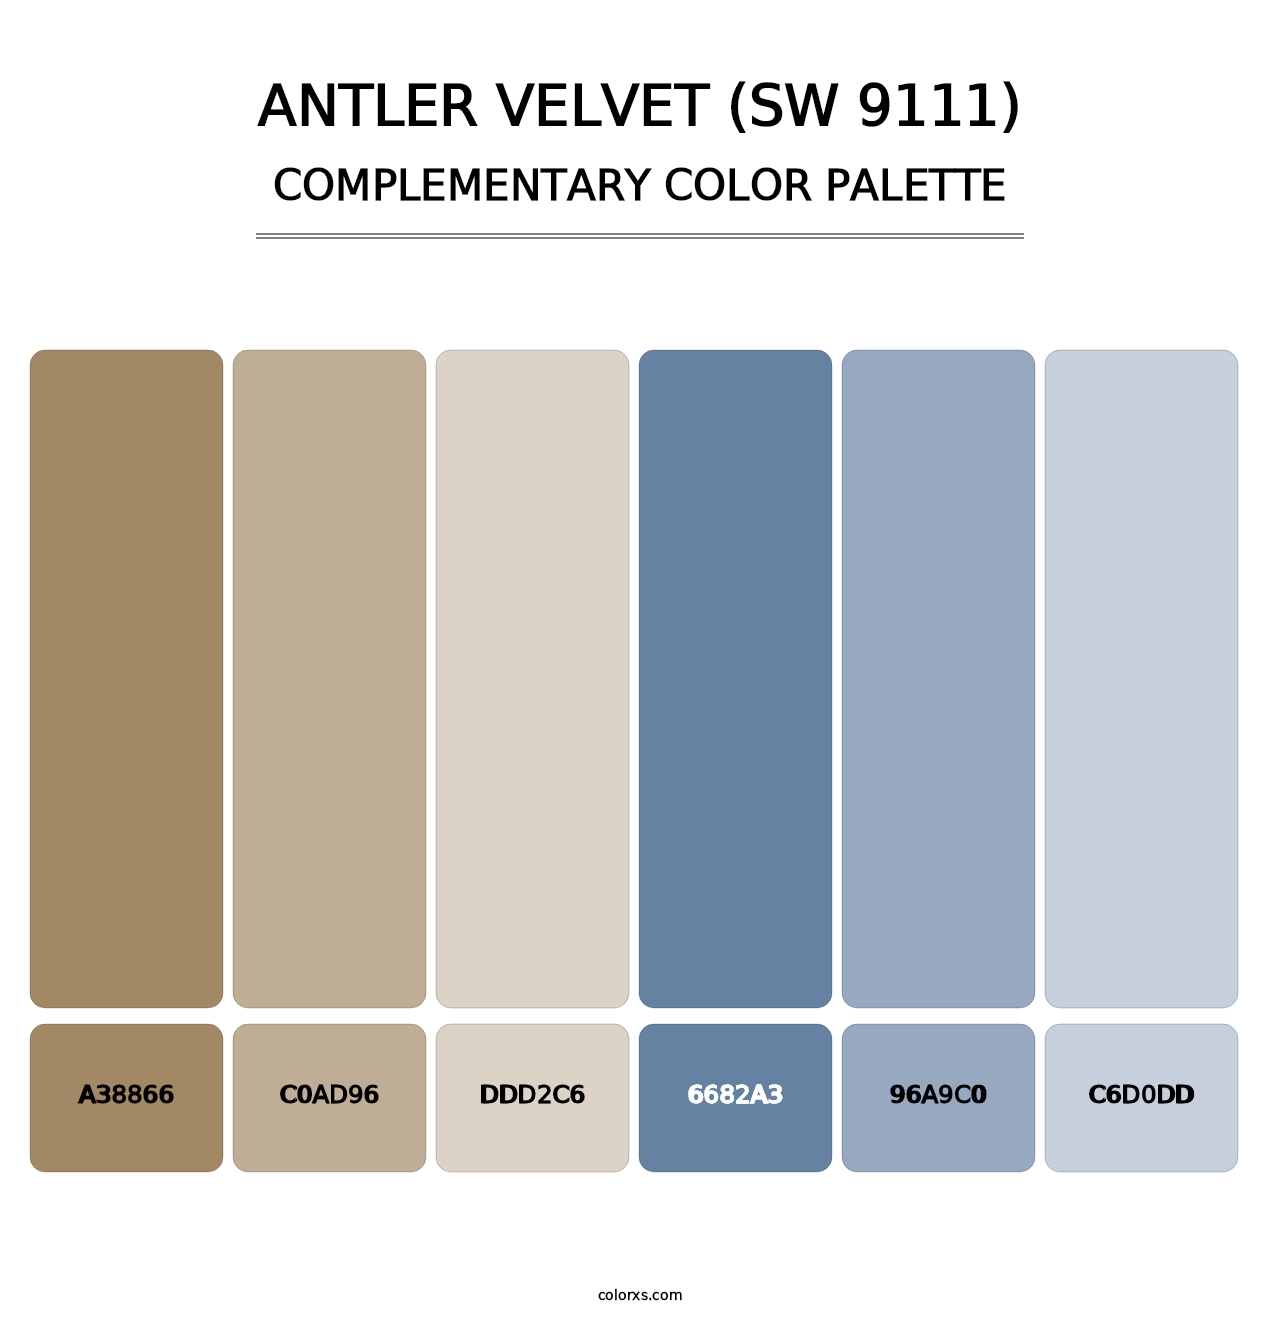 Antler Velvet (SW 9111) - Complementary Color Palette